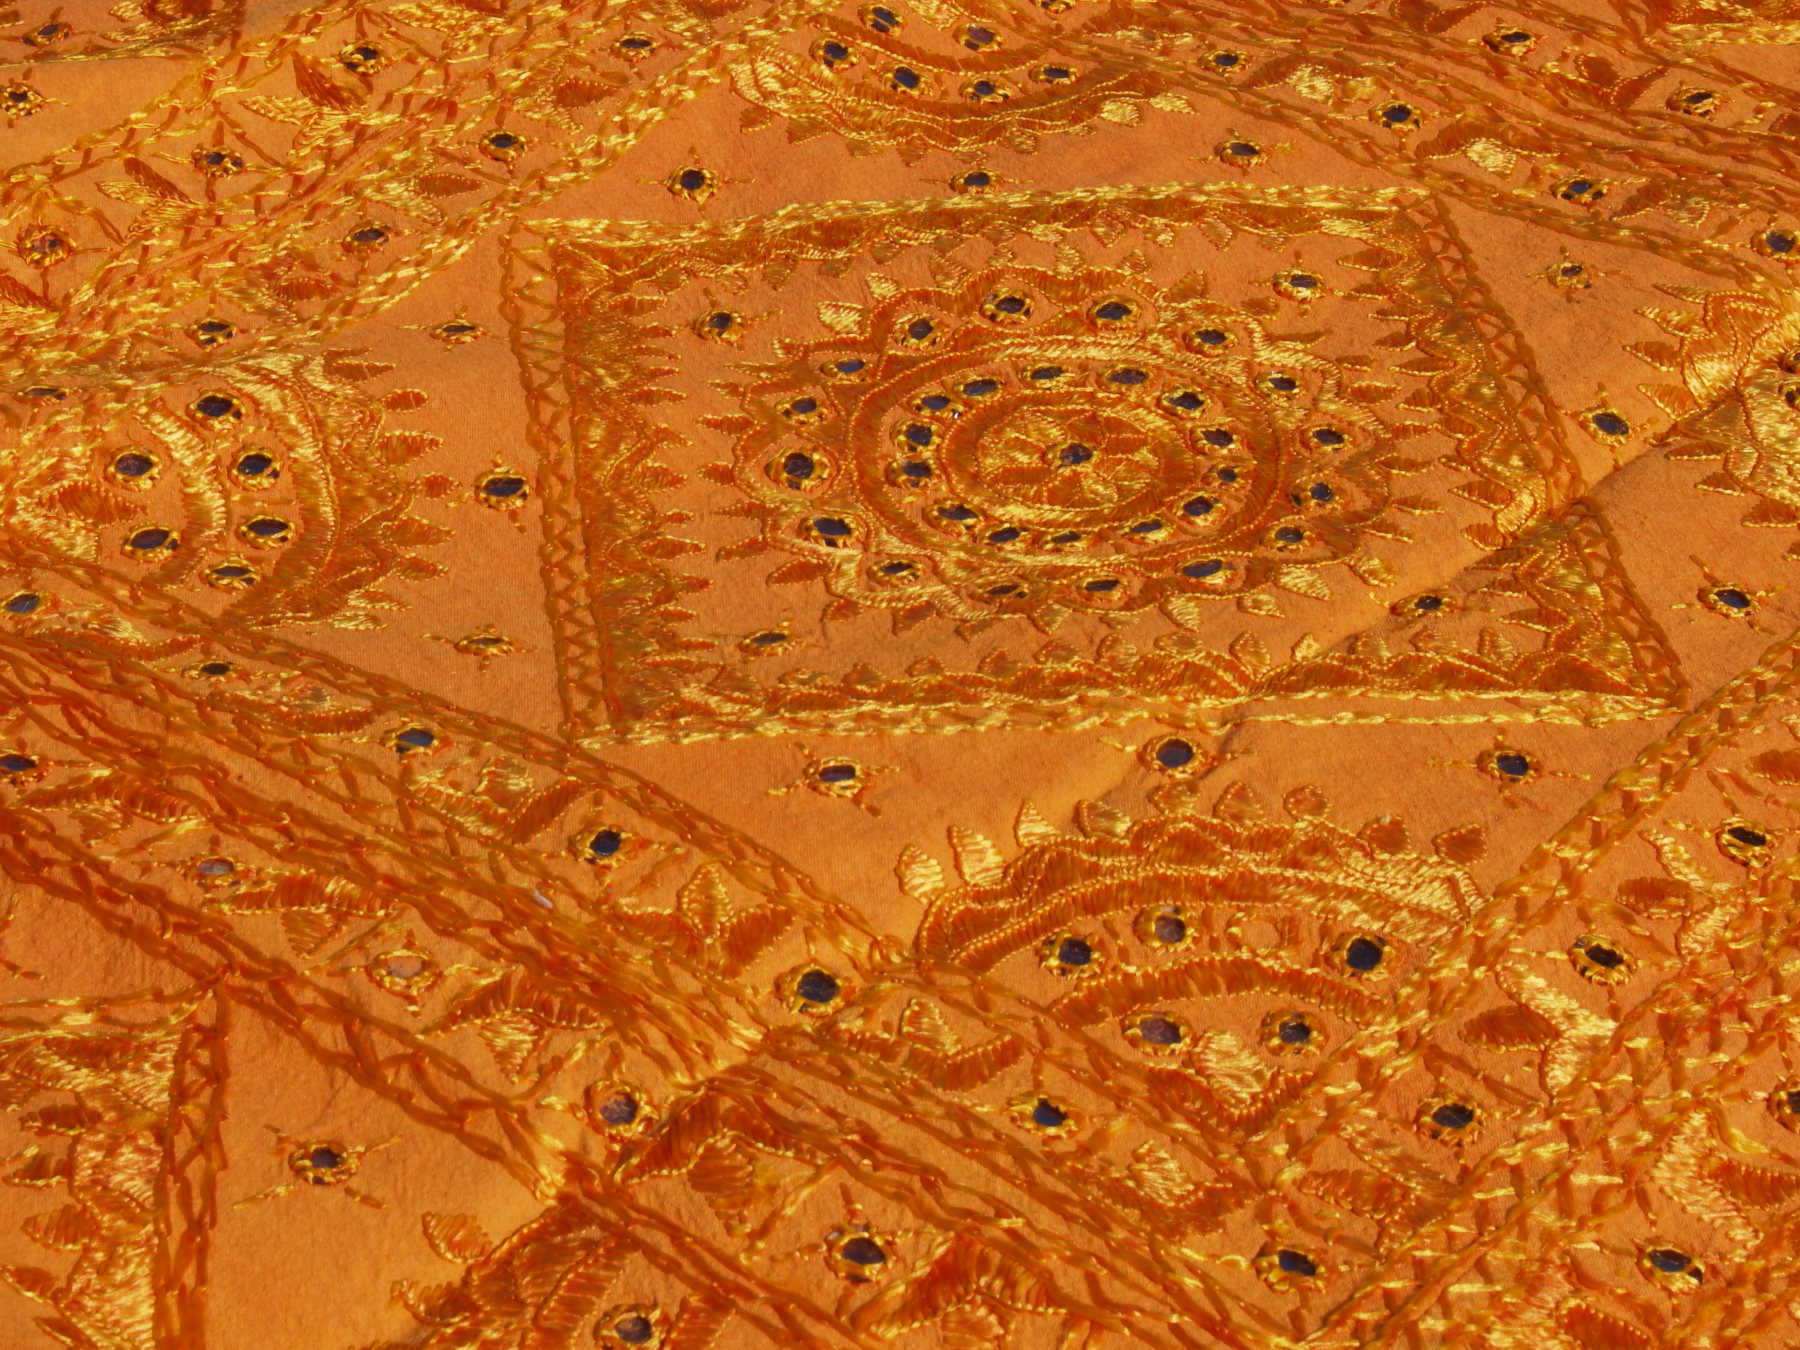 Telo Indiano in cotone doppio strato, ricamato tono su tono con specchietti,  di color arancione. Può essere impiegato come copridivano, copriletto, tovaglia o tessuto da appendere a parete. Dimensioni 215x270cm